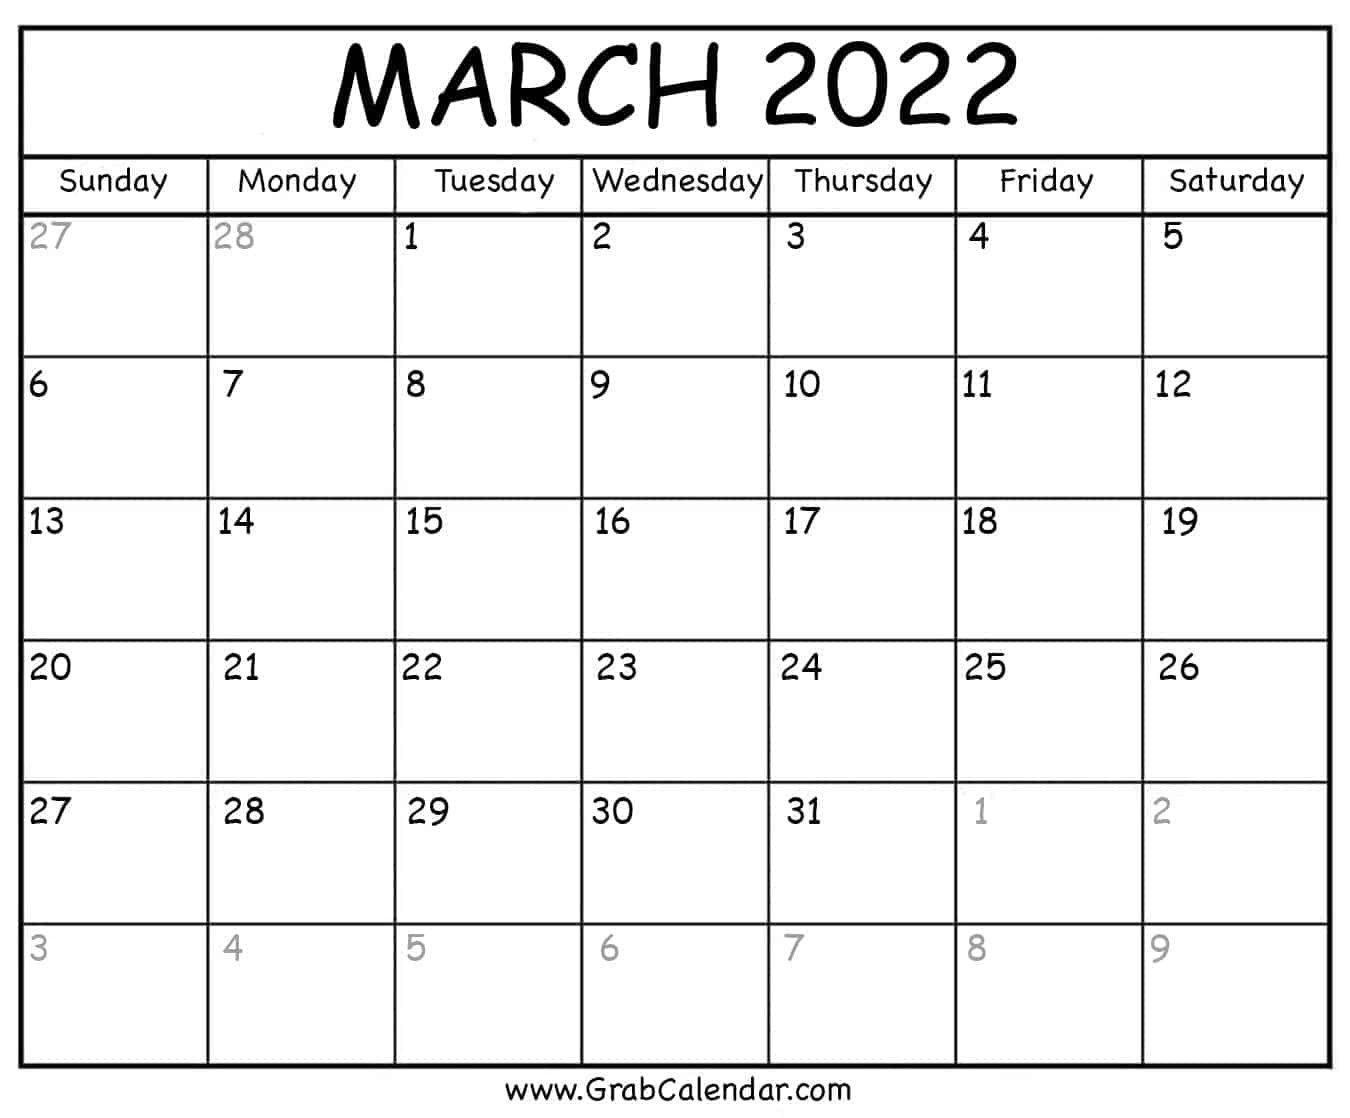 March 2022 Calendar Printable Printable March 2022 Calendar